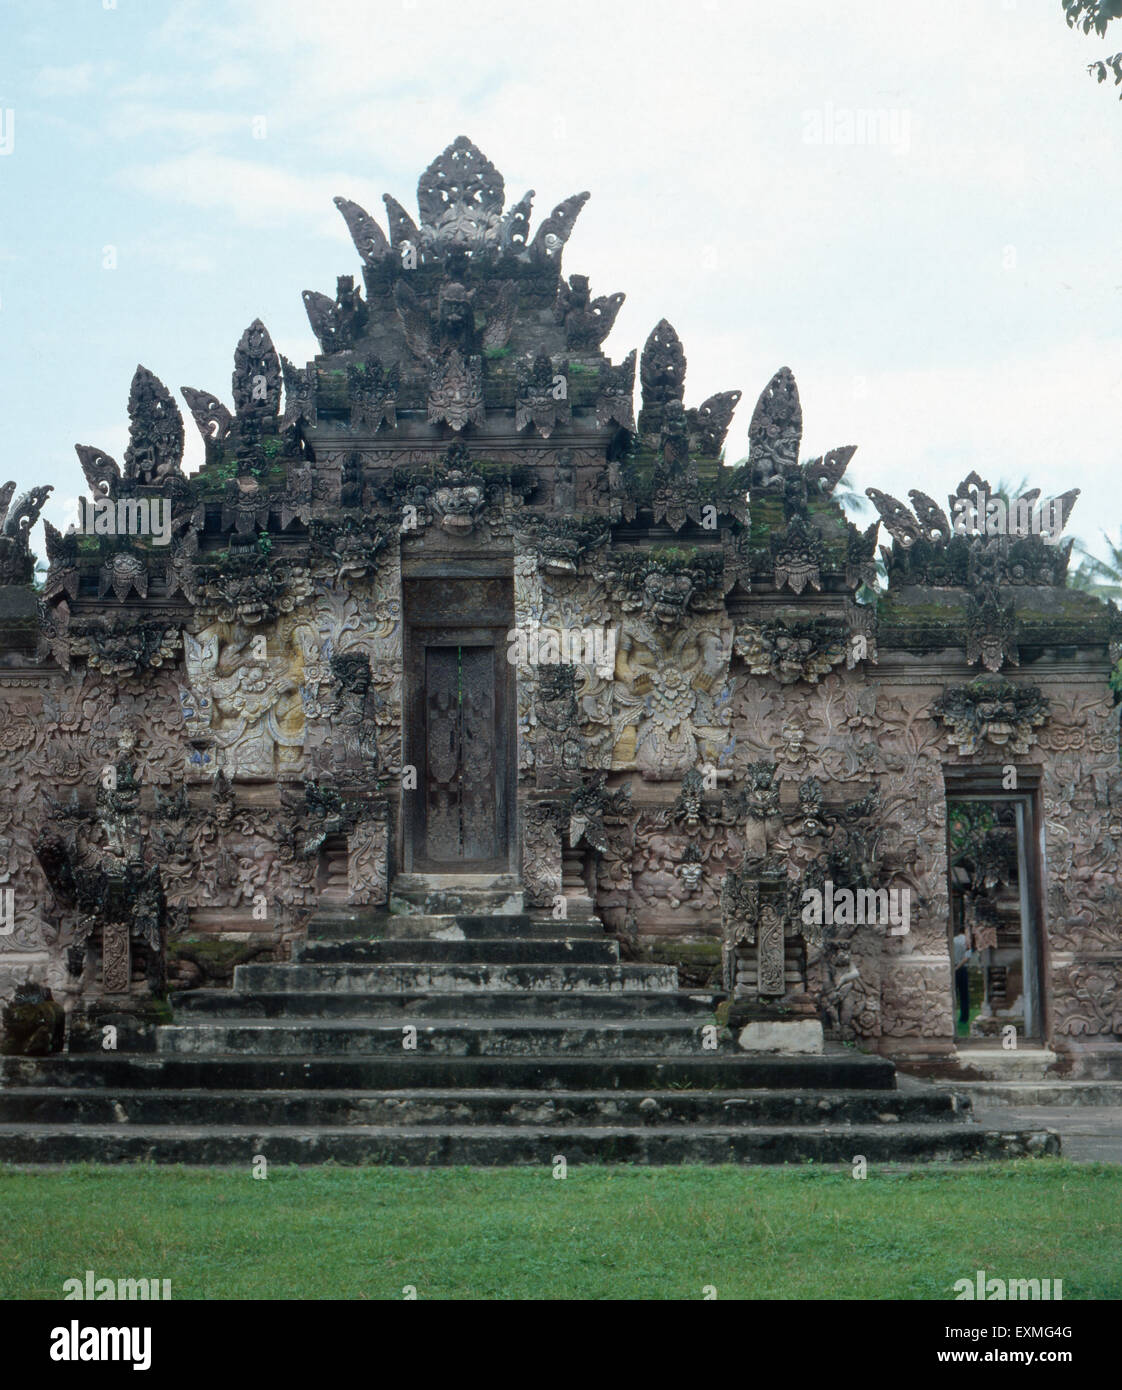 Eine Besichtigung des Tempels Pura Beji in Singaraja, Bali, Indonesien-1982. Besichtigung der Tempel Pura Beji in Singaraja, Bali, Indonesien 1982. Stockfoto